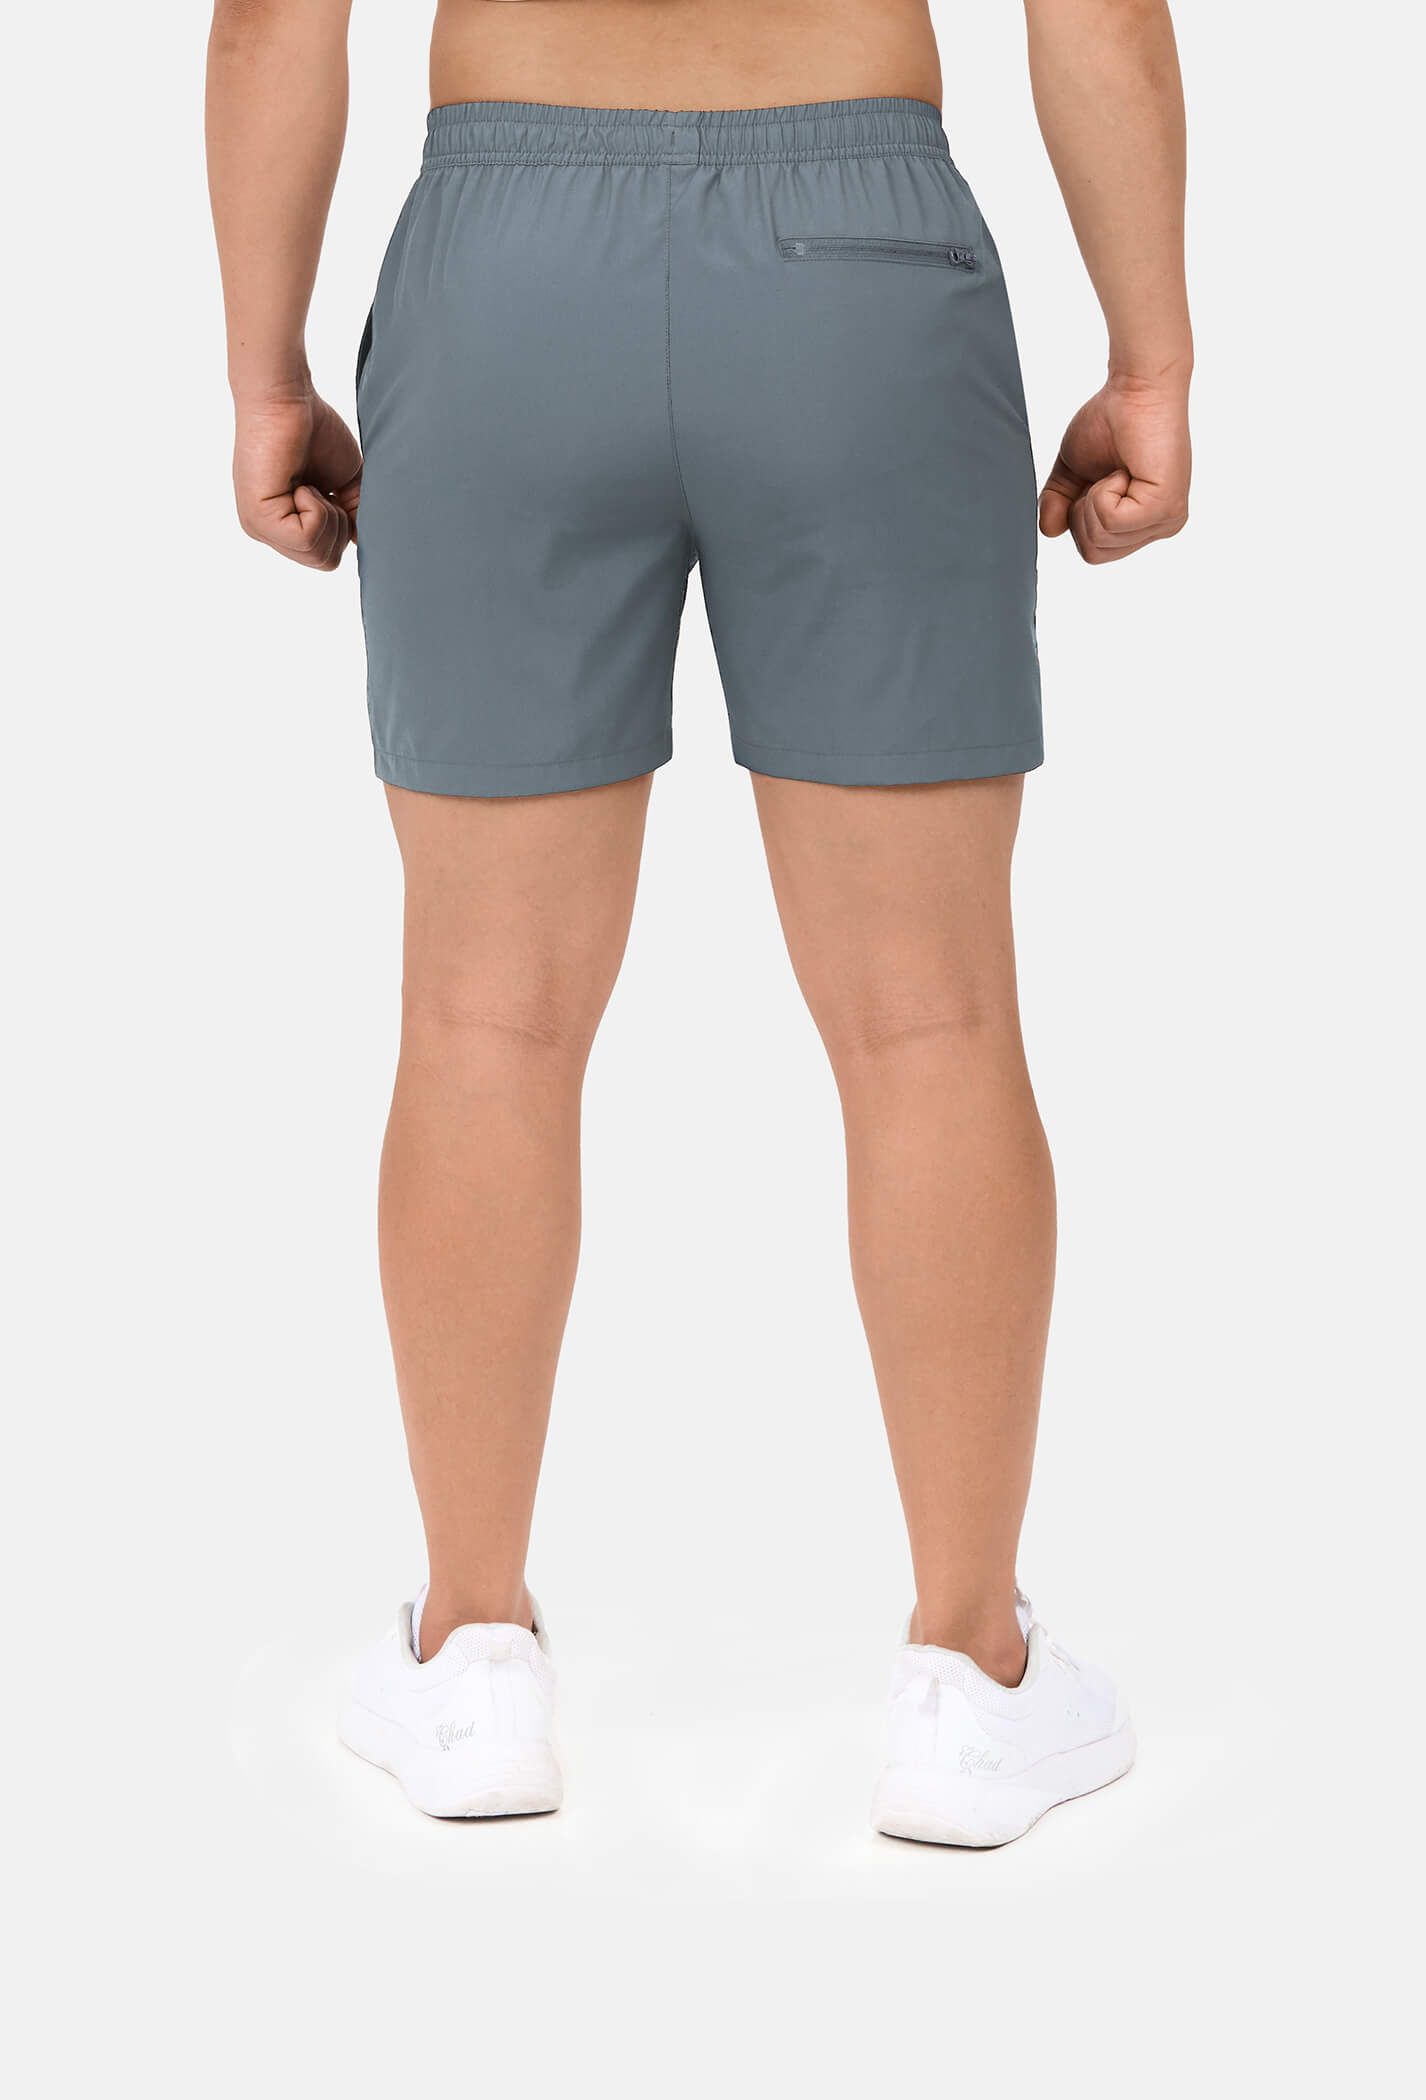 Outlet - Quần shorts nam thể thao 5" xẻ gấu cao (túi sau có khóa kéo) Xám xanh 3